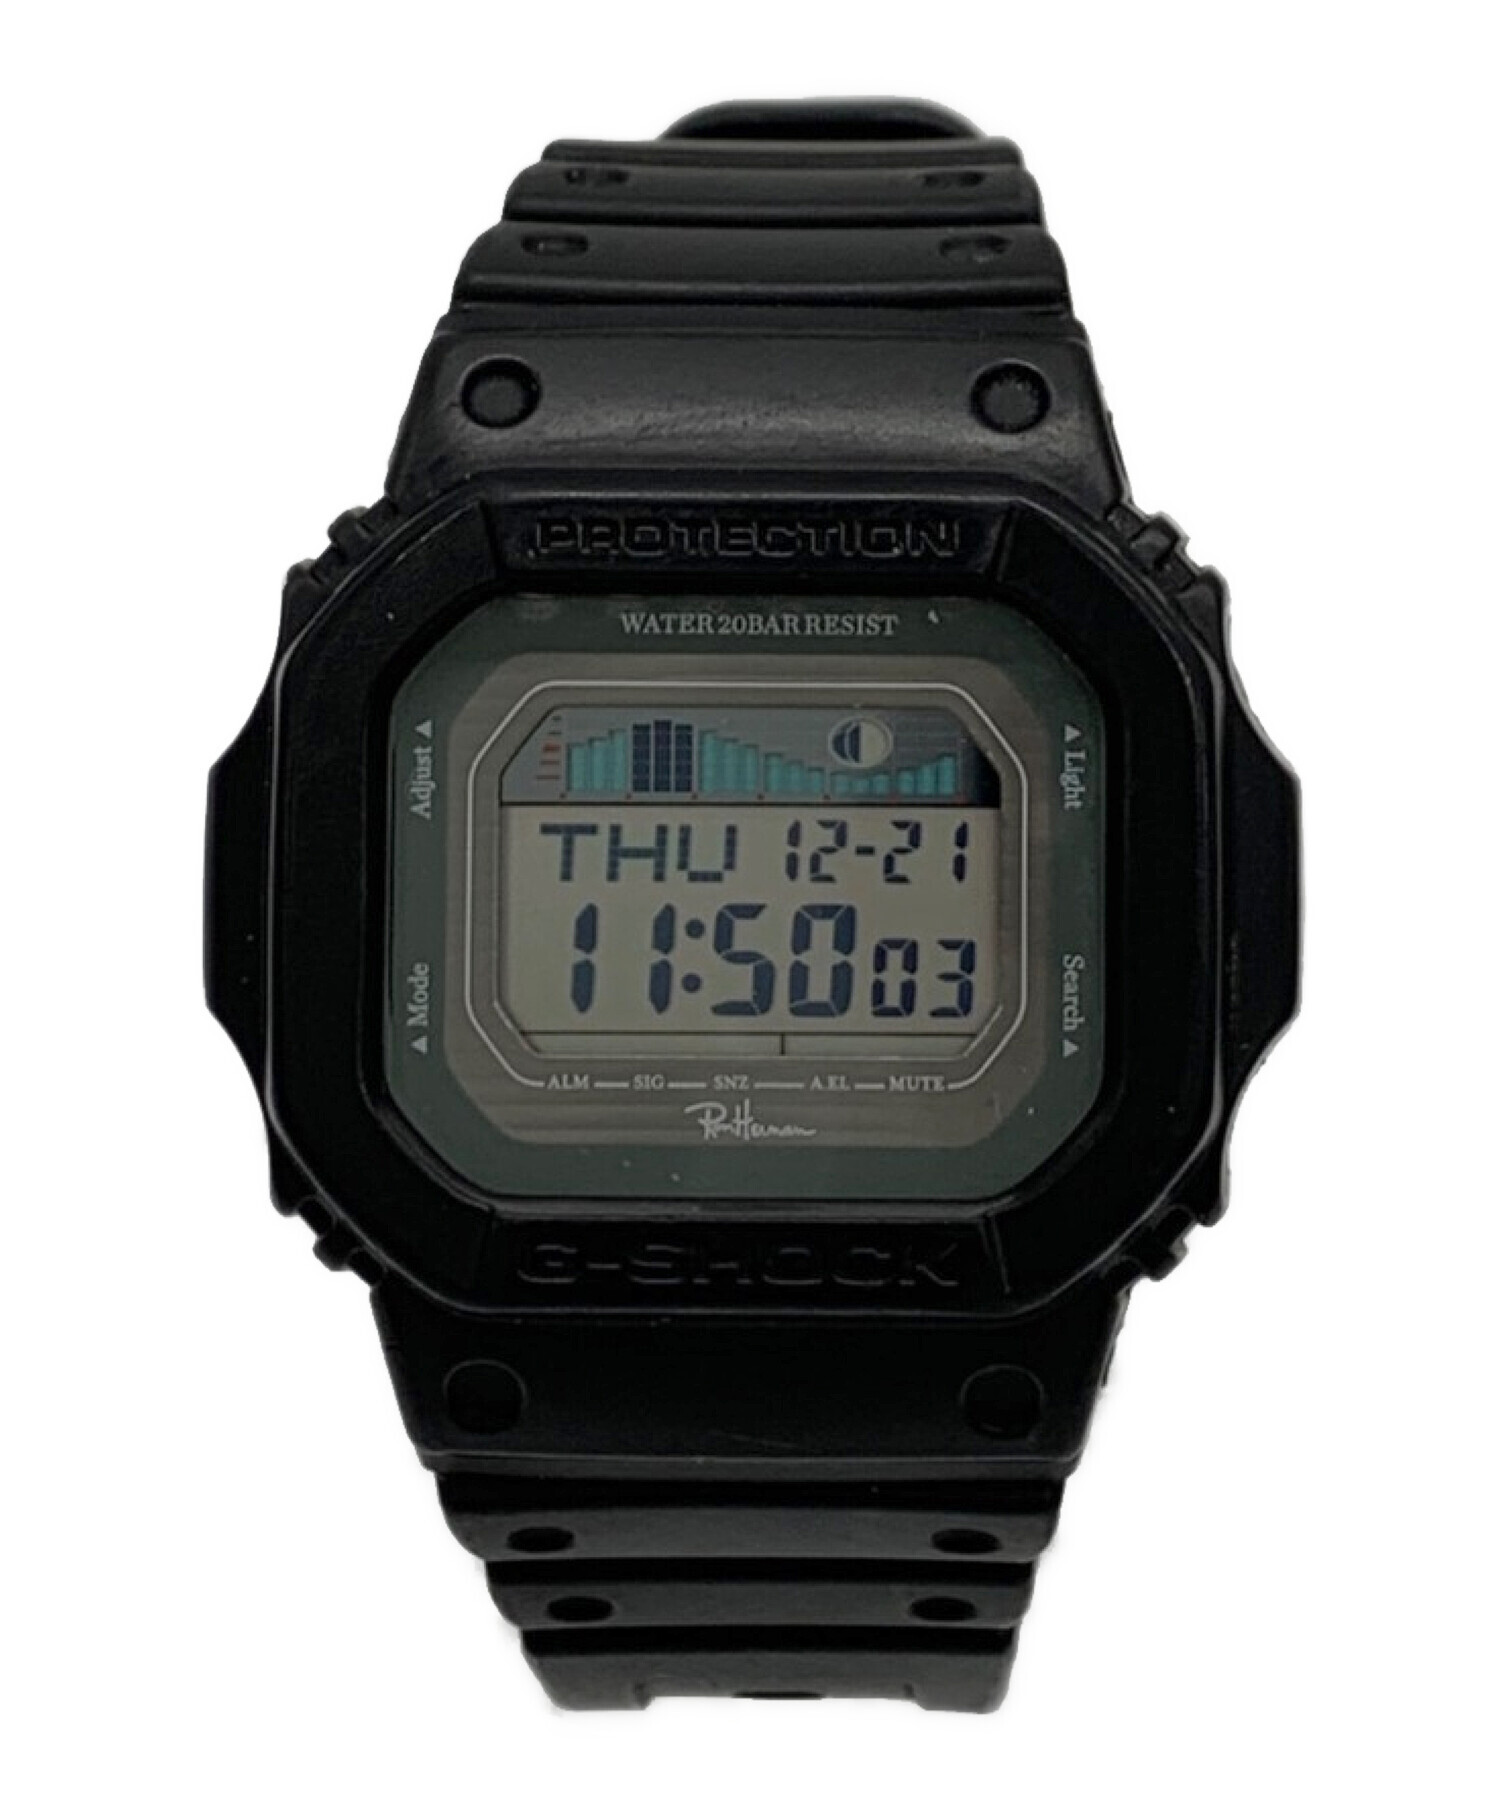 腕時計(デジタル)ron herman g shock